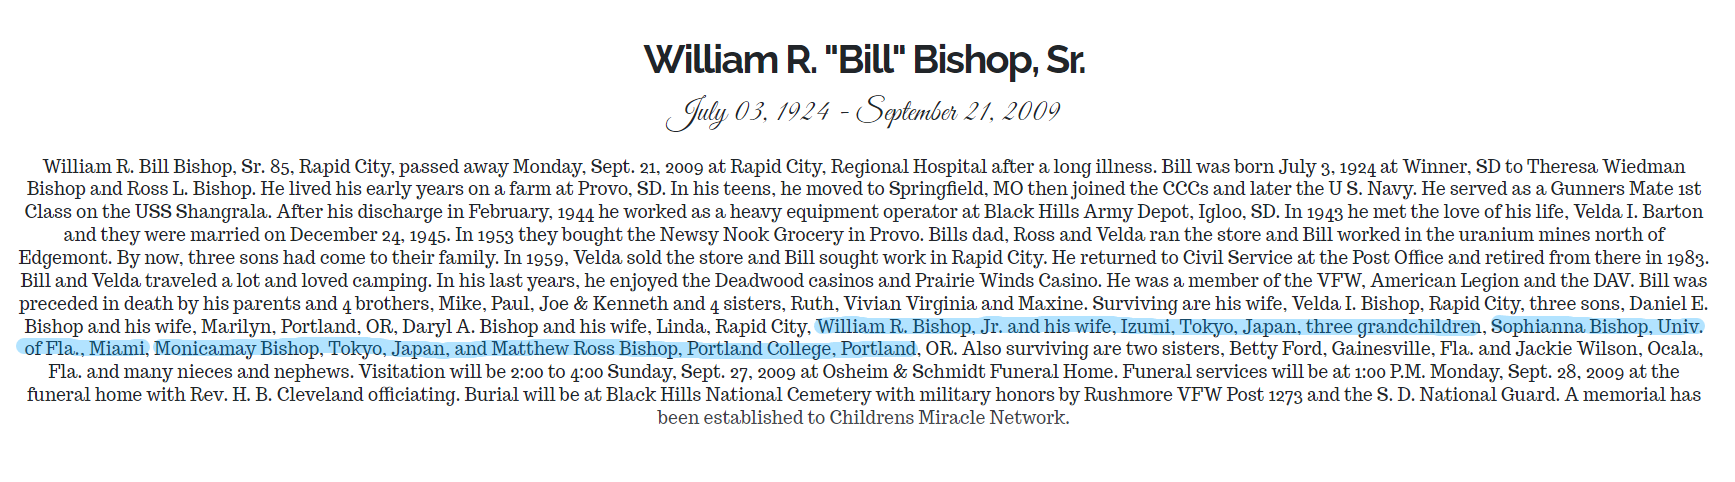 ビショップ家の家族の名前が詳しく書かれた文献　https://www.osheimschmidt.com/obituary/5717025/print